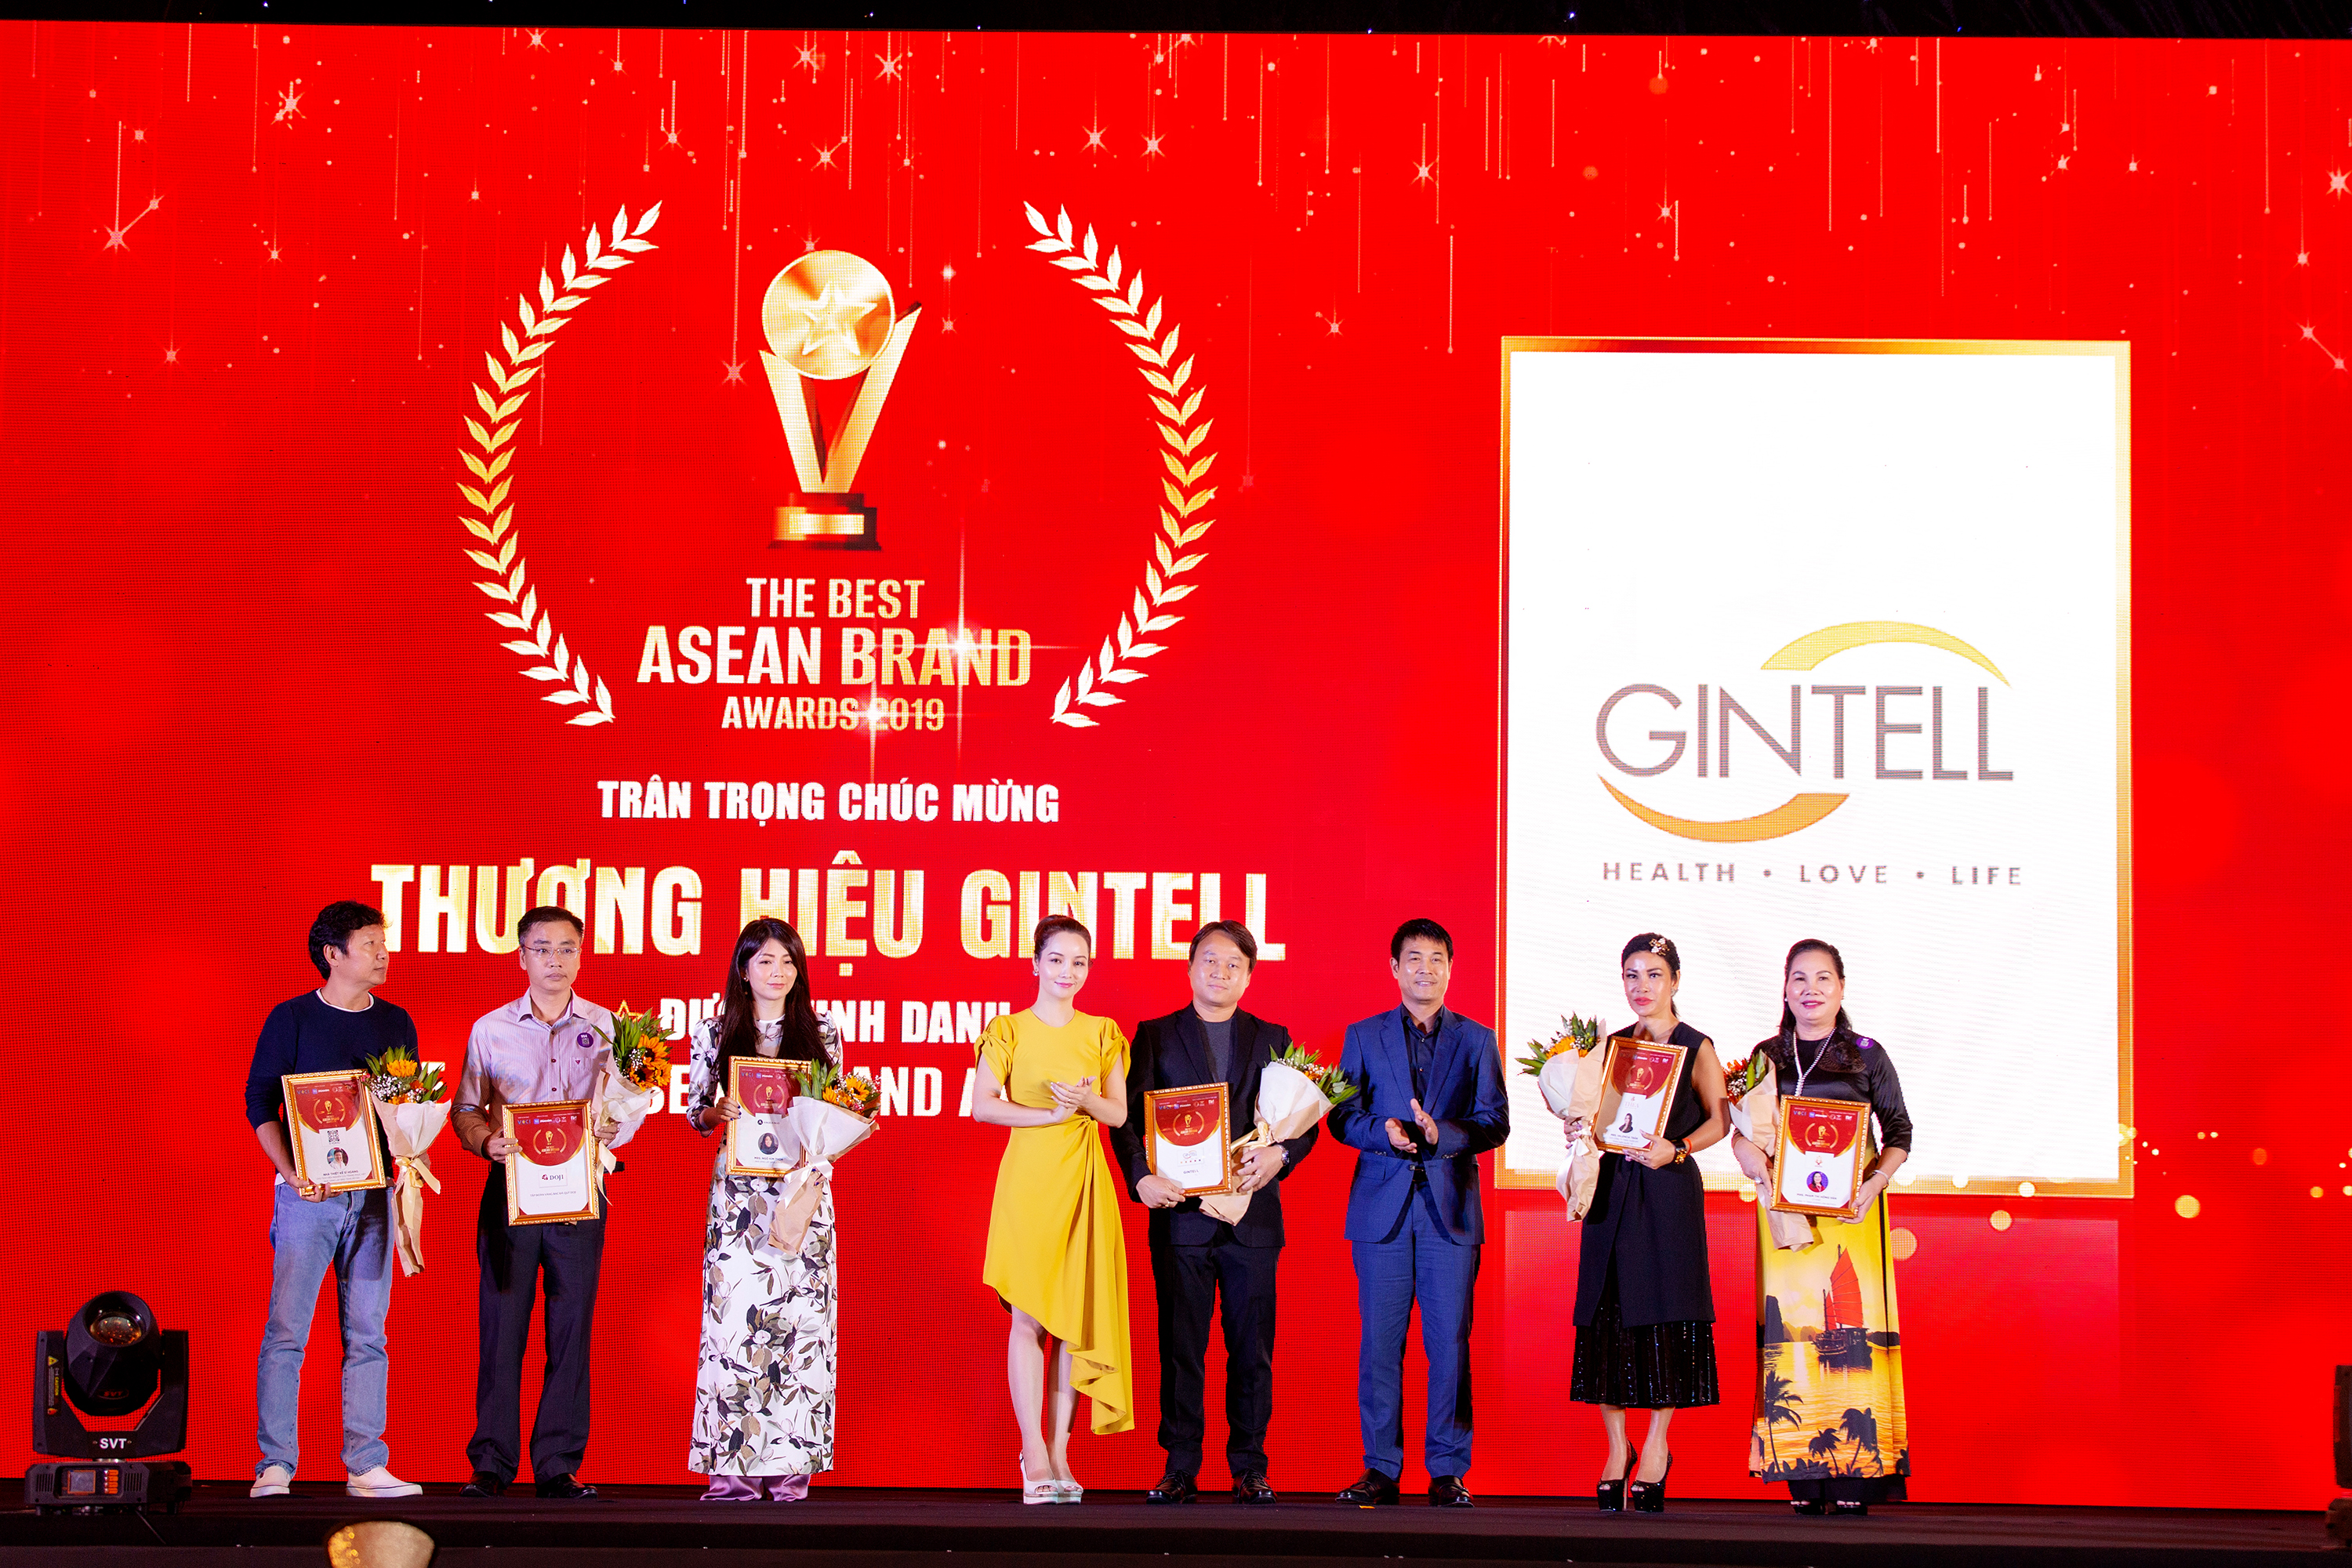 Thương hiệu ghế massage và thiết bị chăm sóc sức khỏe Gintell tiếp tục khẳng định tên tuổi với giải thưởng The Best Asean Brand Awards 2019